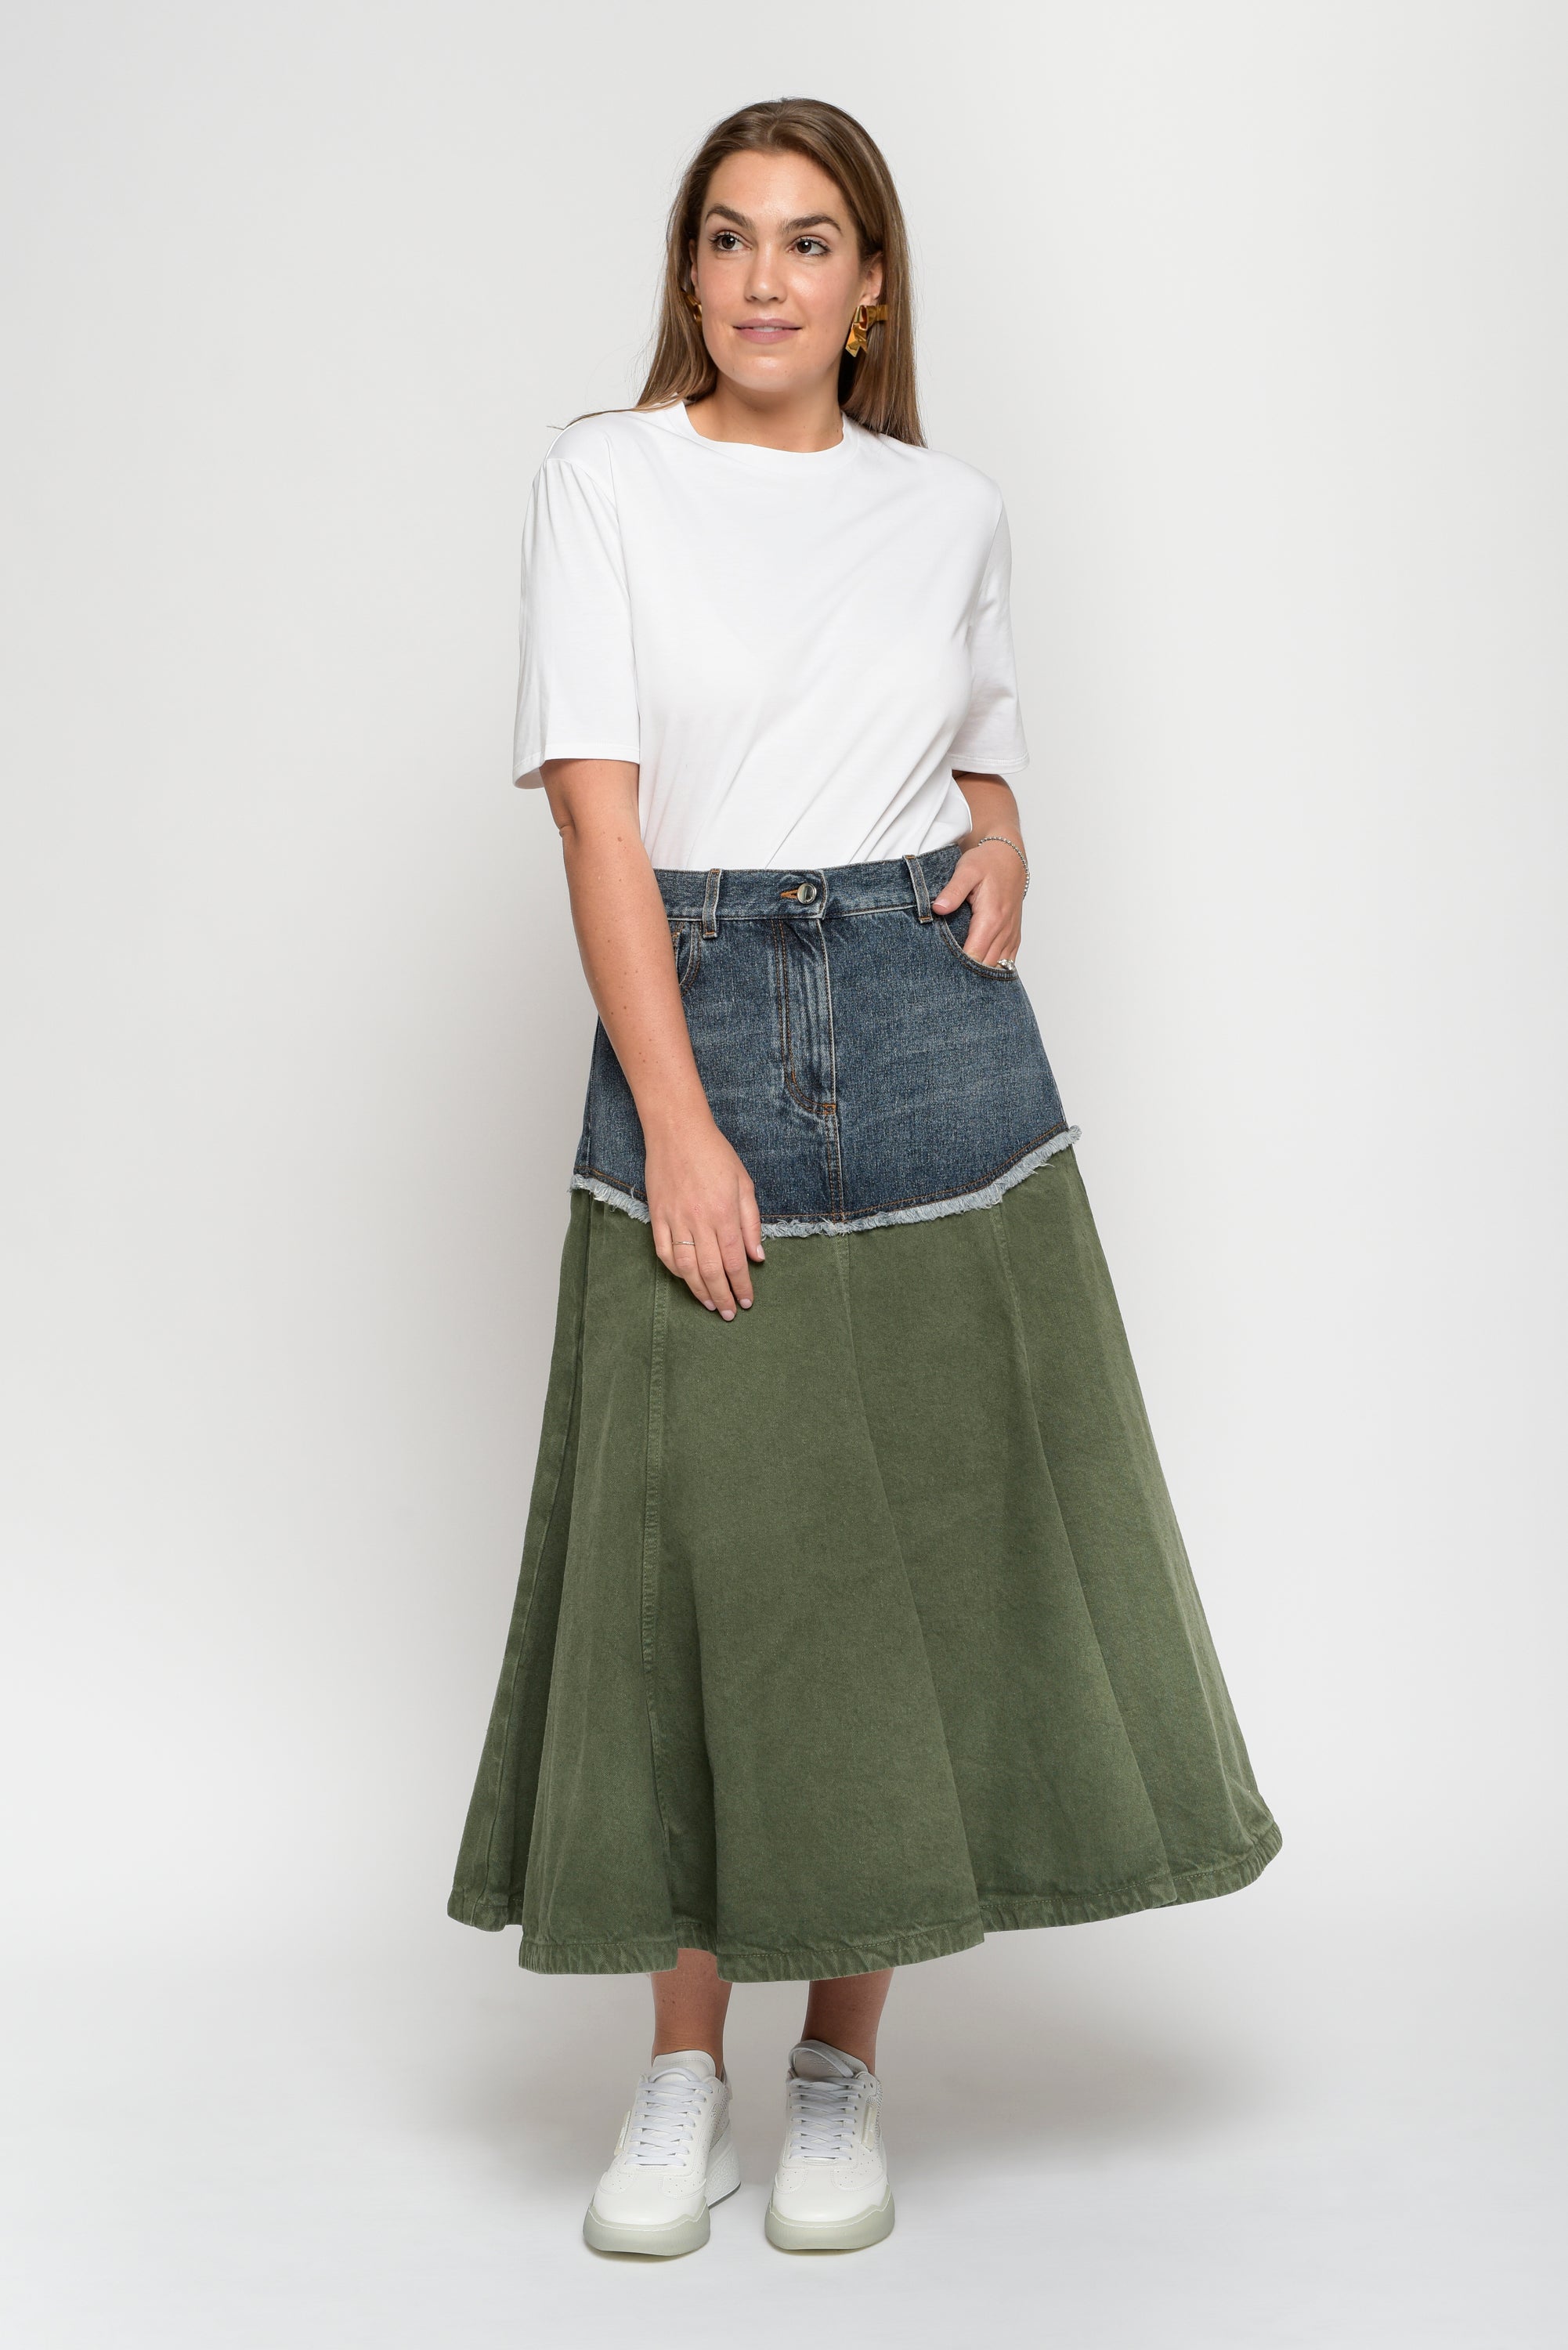 Hem Solid Color Denim Skirt Frayed Hem Olive Green High - Temu